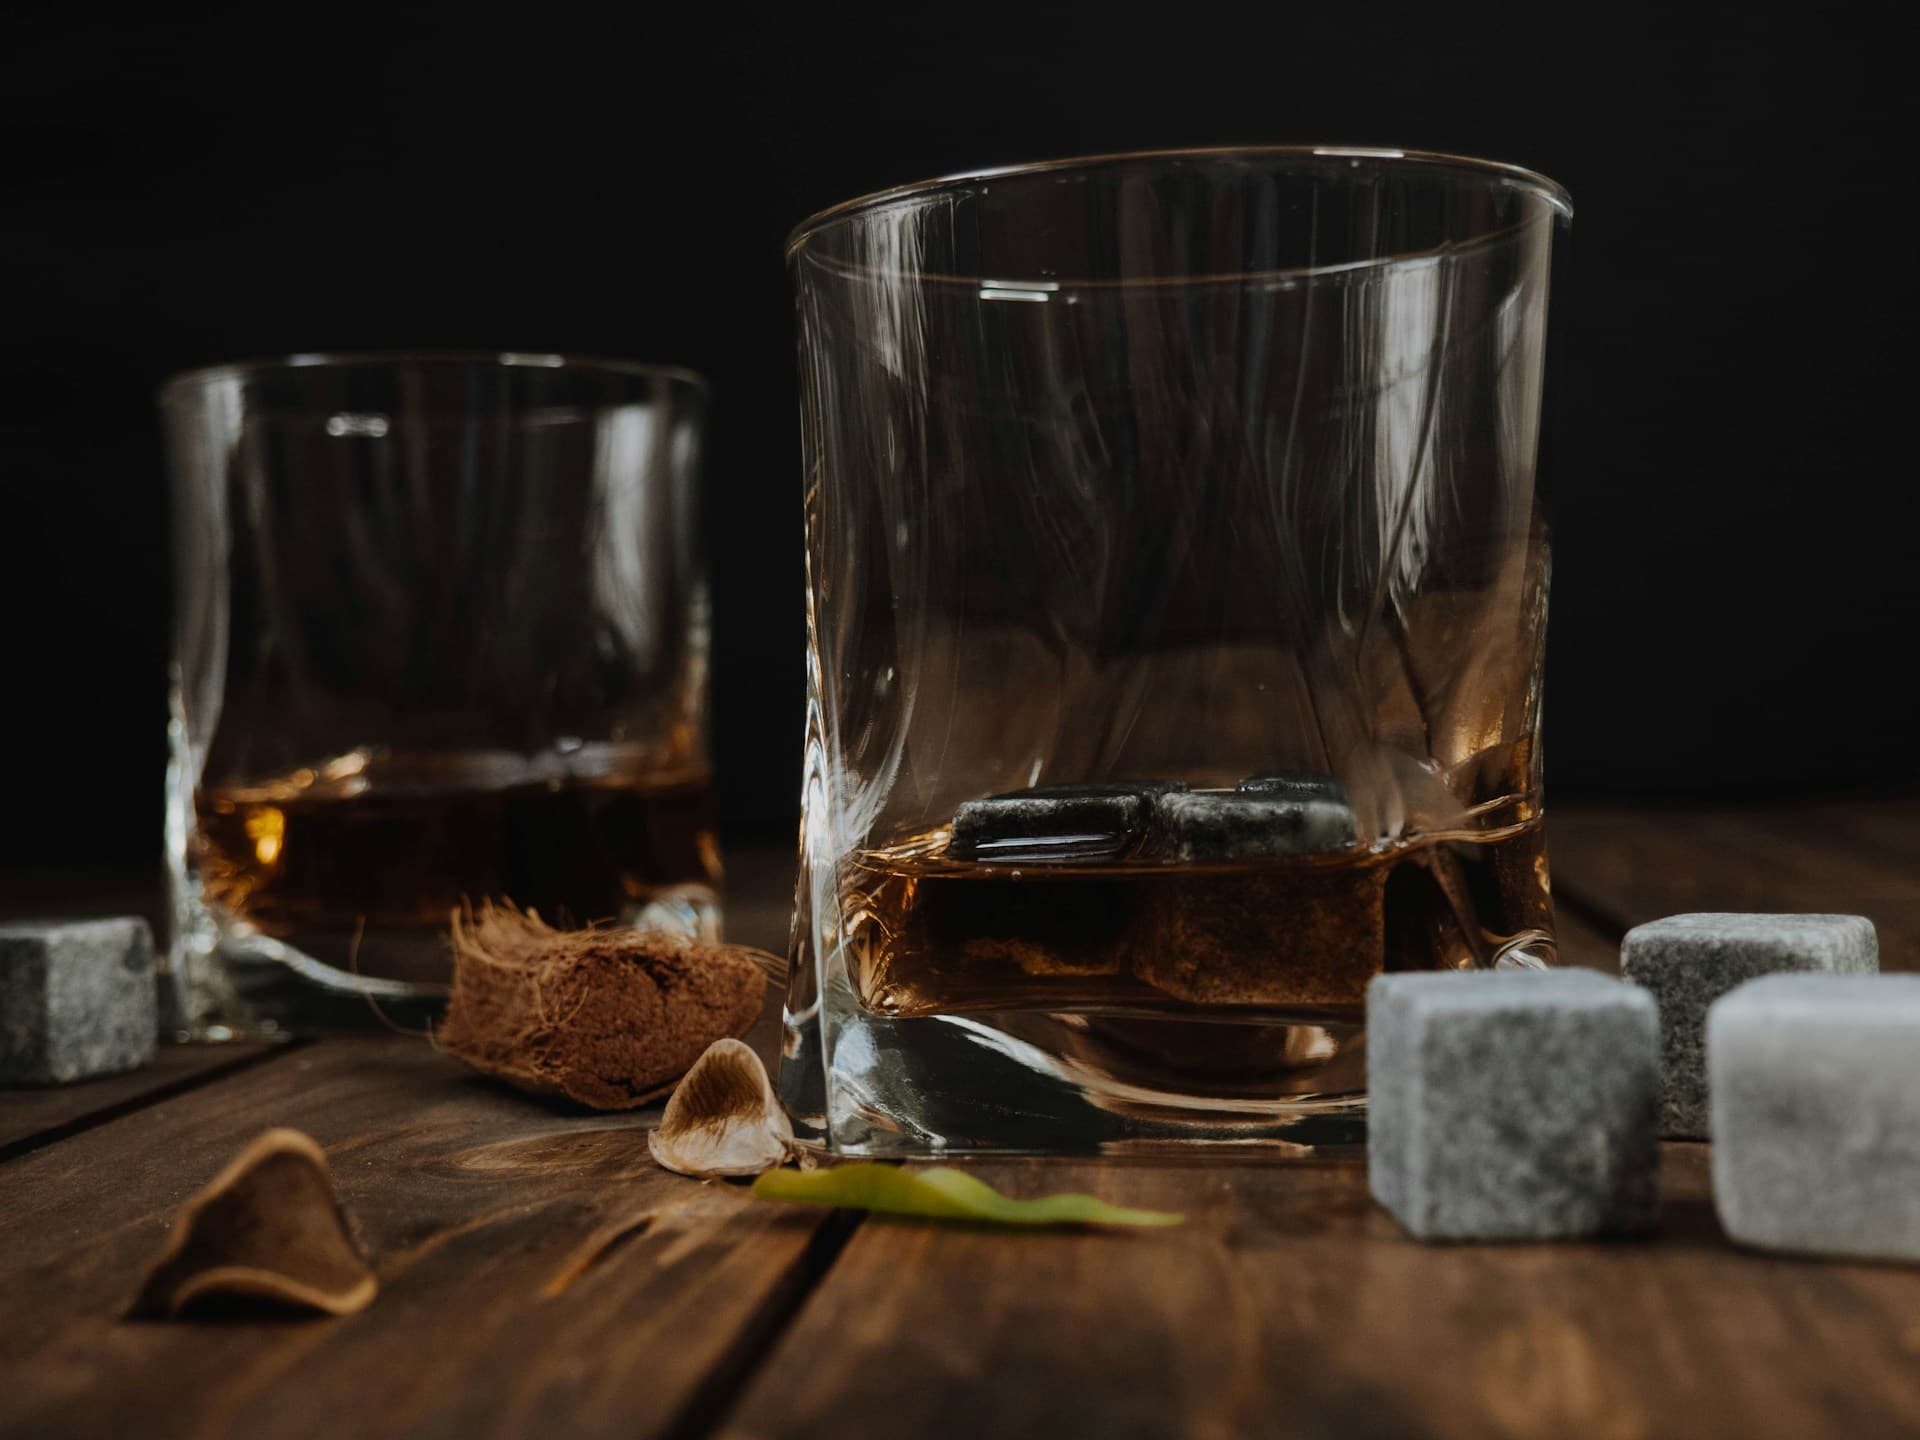 whisky stones